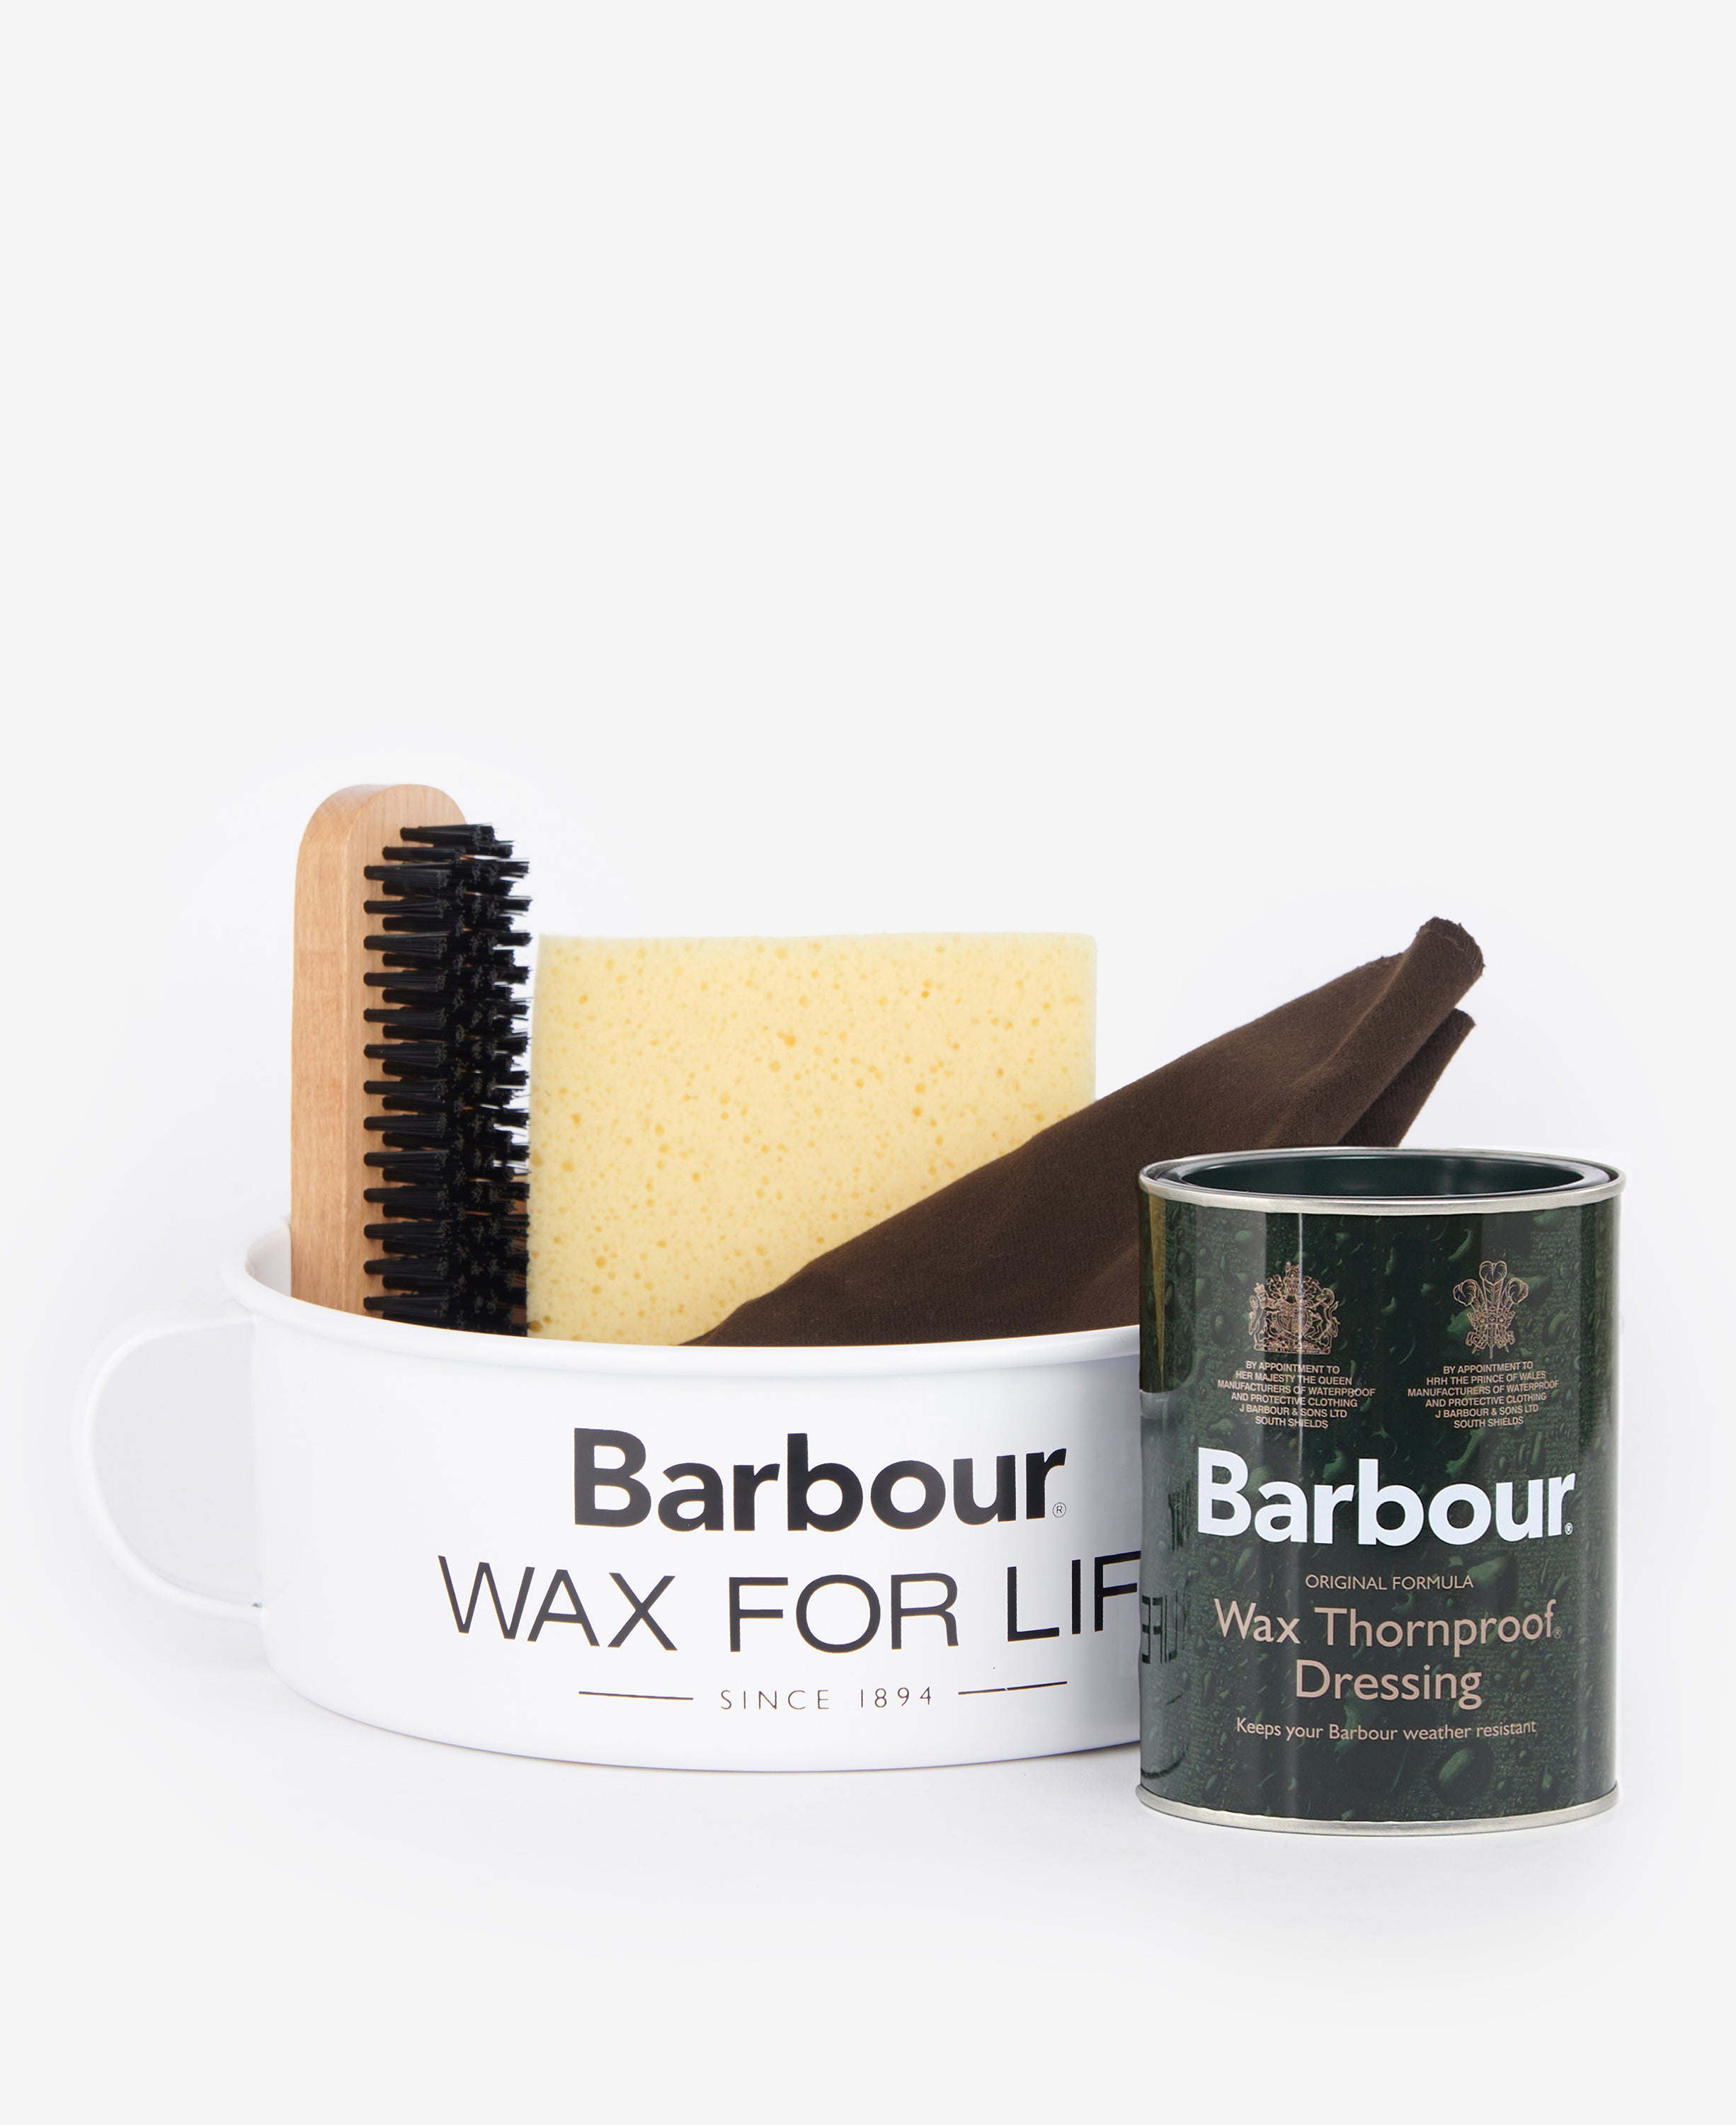 Barbour - Nikwax Tech Wash